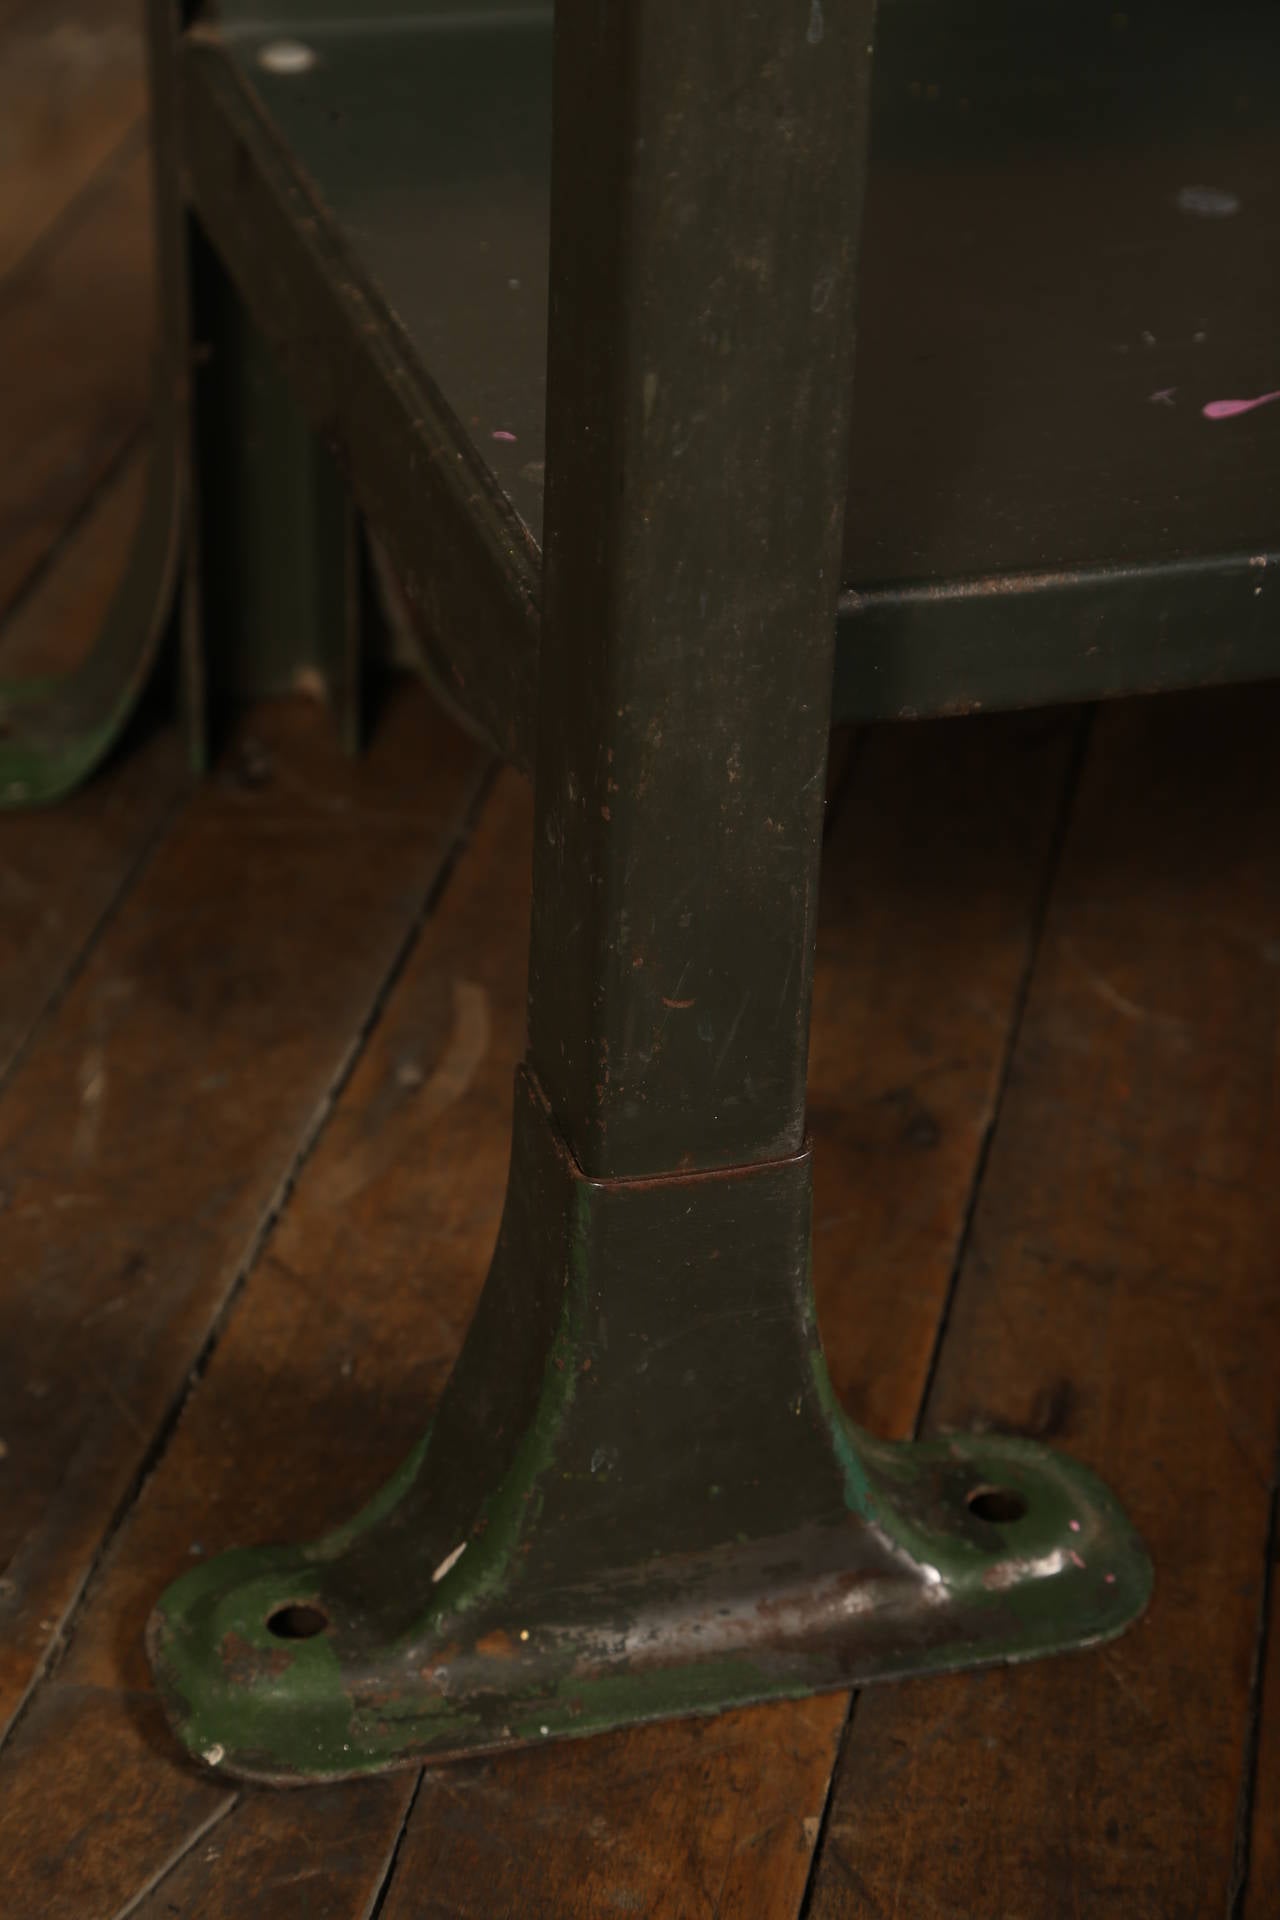 Rustic Artist's Table or Desk Vintage Industrial Metal Worn Painted Workbench 2